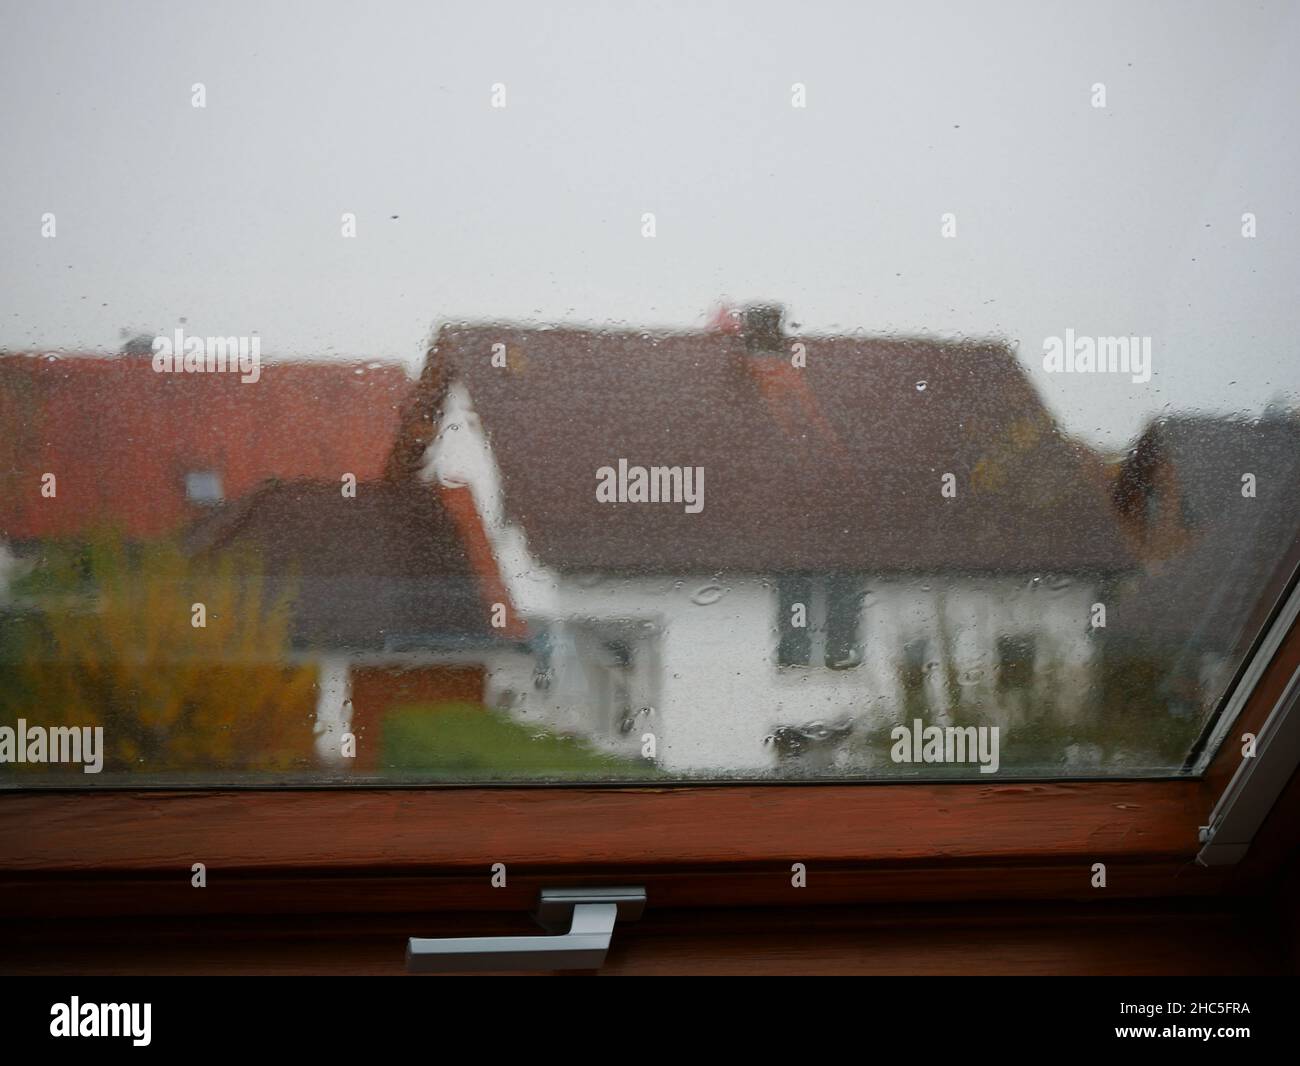 Primer plano de cristal de ventana con gotas de lluvia, casas residenciales desenfocadas en el fondo Foto de stock